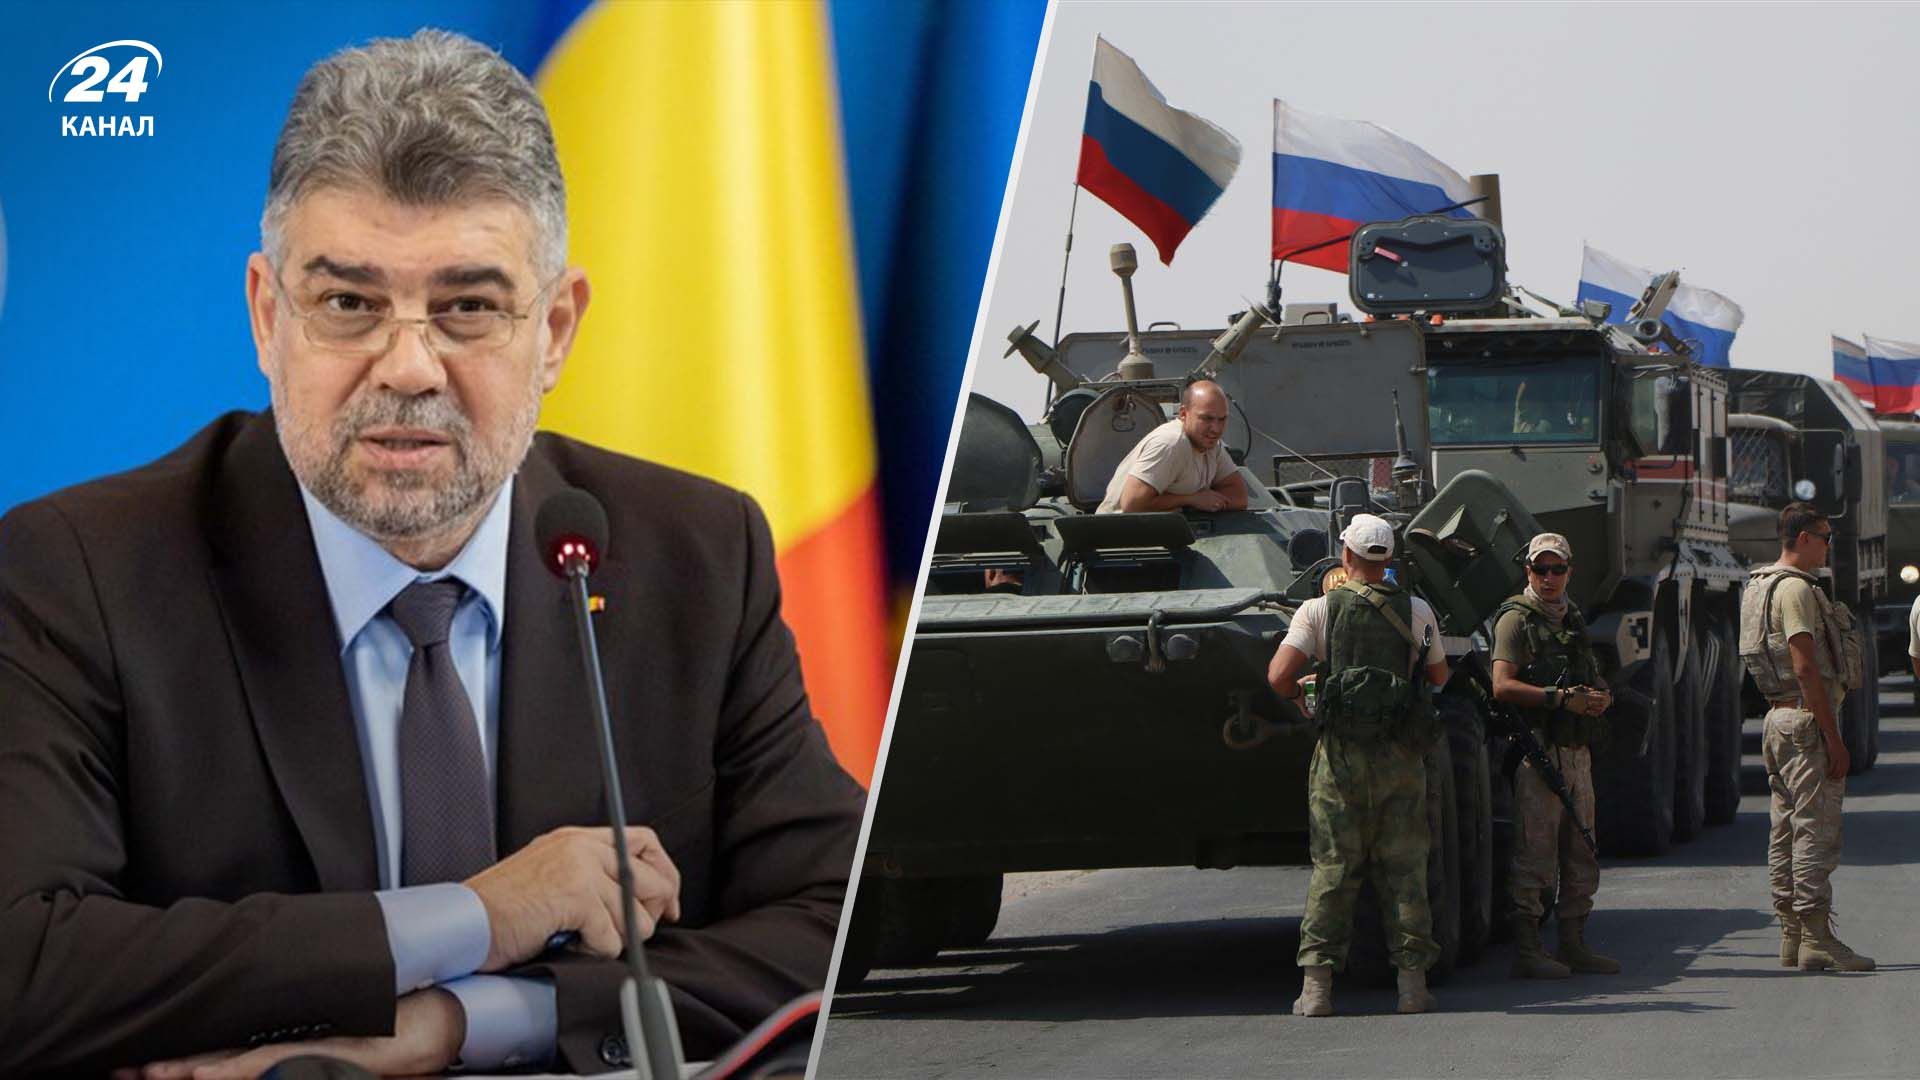  Прем'єр Румунії впевнений, що Росія не нападатиме на його країну